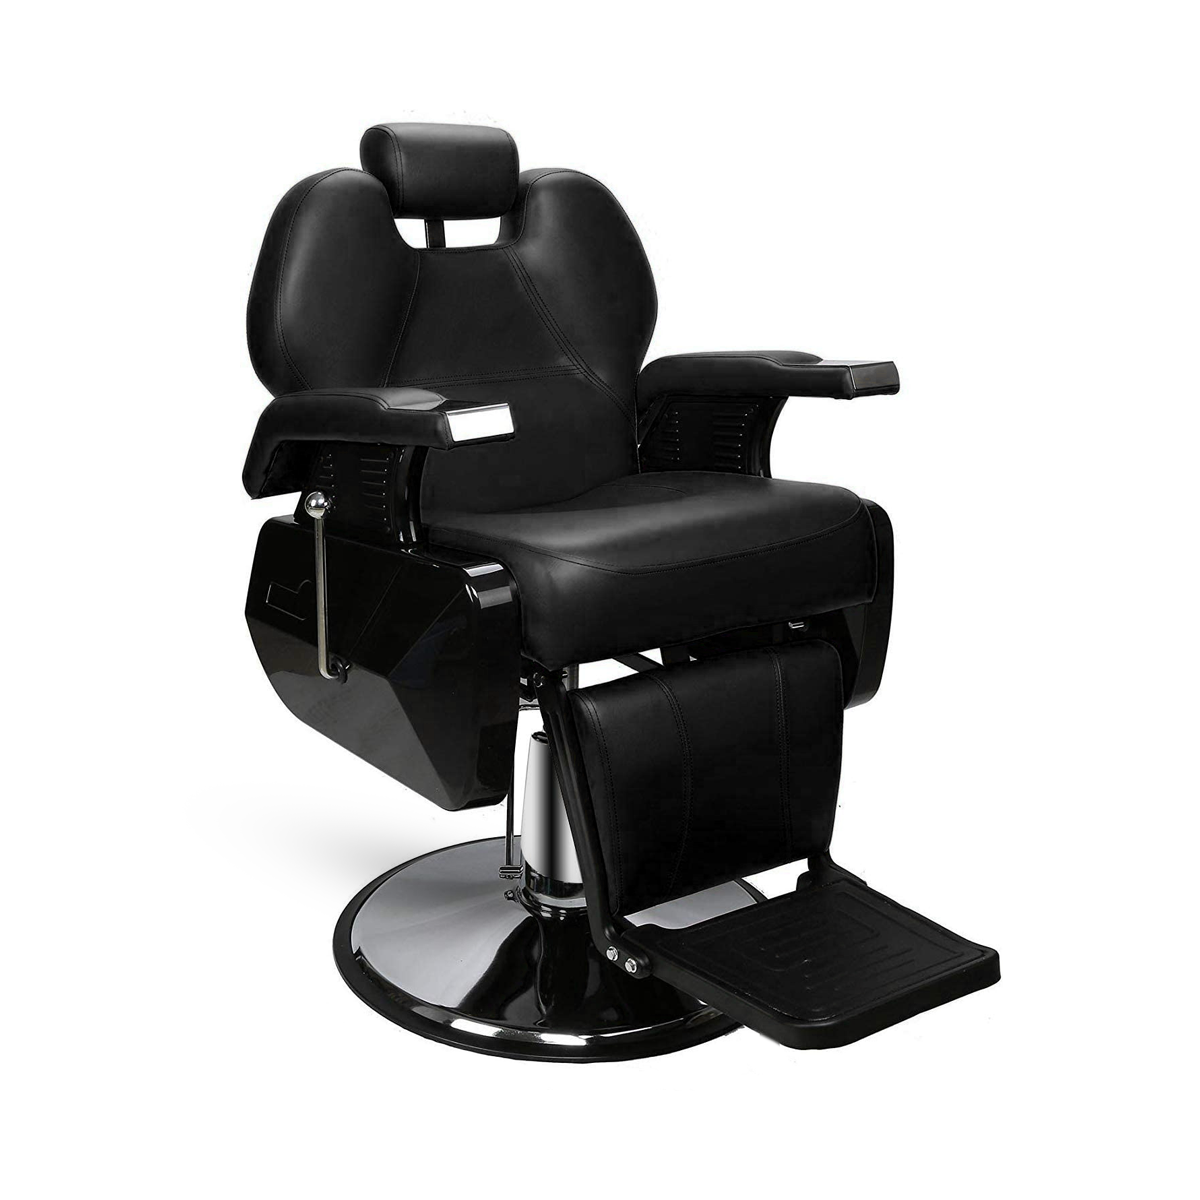 Silla de peluquería, silla de salón para estilista, silla de pelo ajustable  en altura, silla de peluquero de estilo clásico con bomba hidráulica